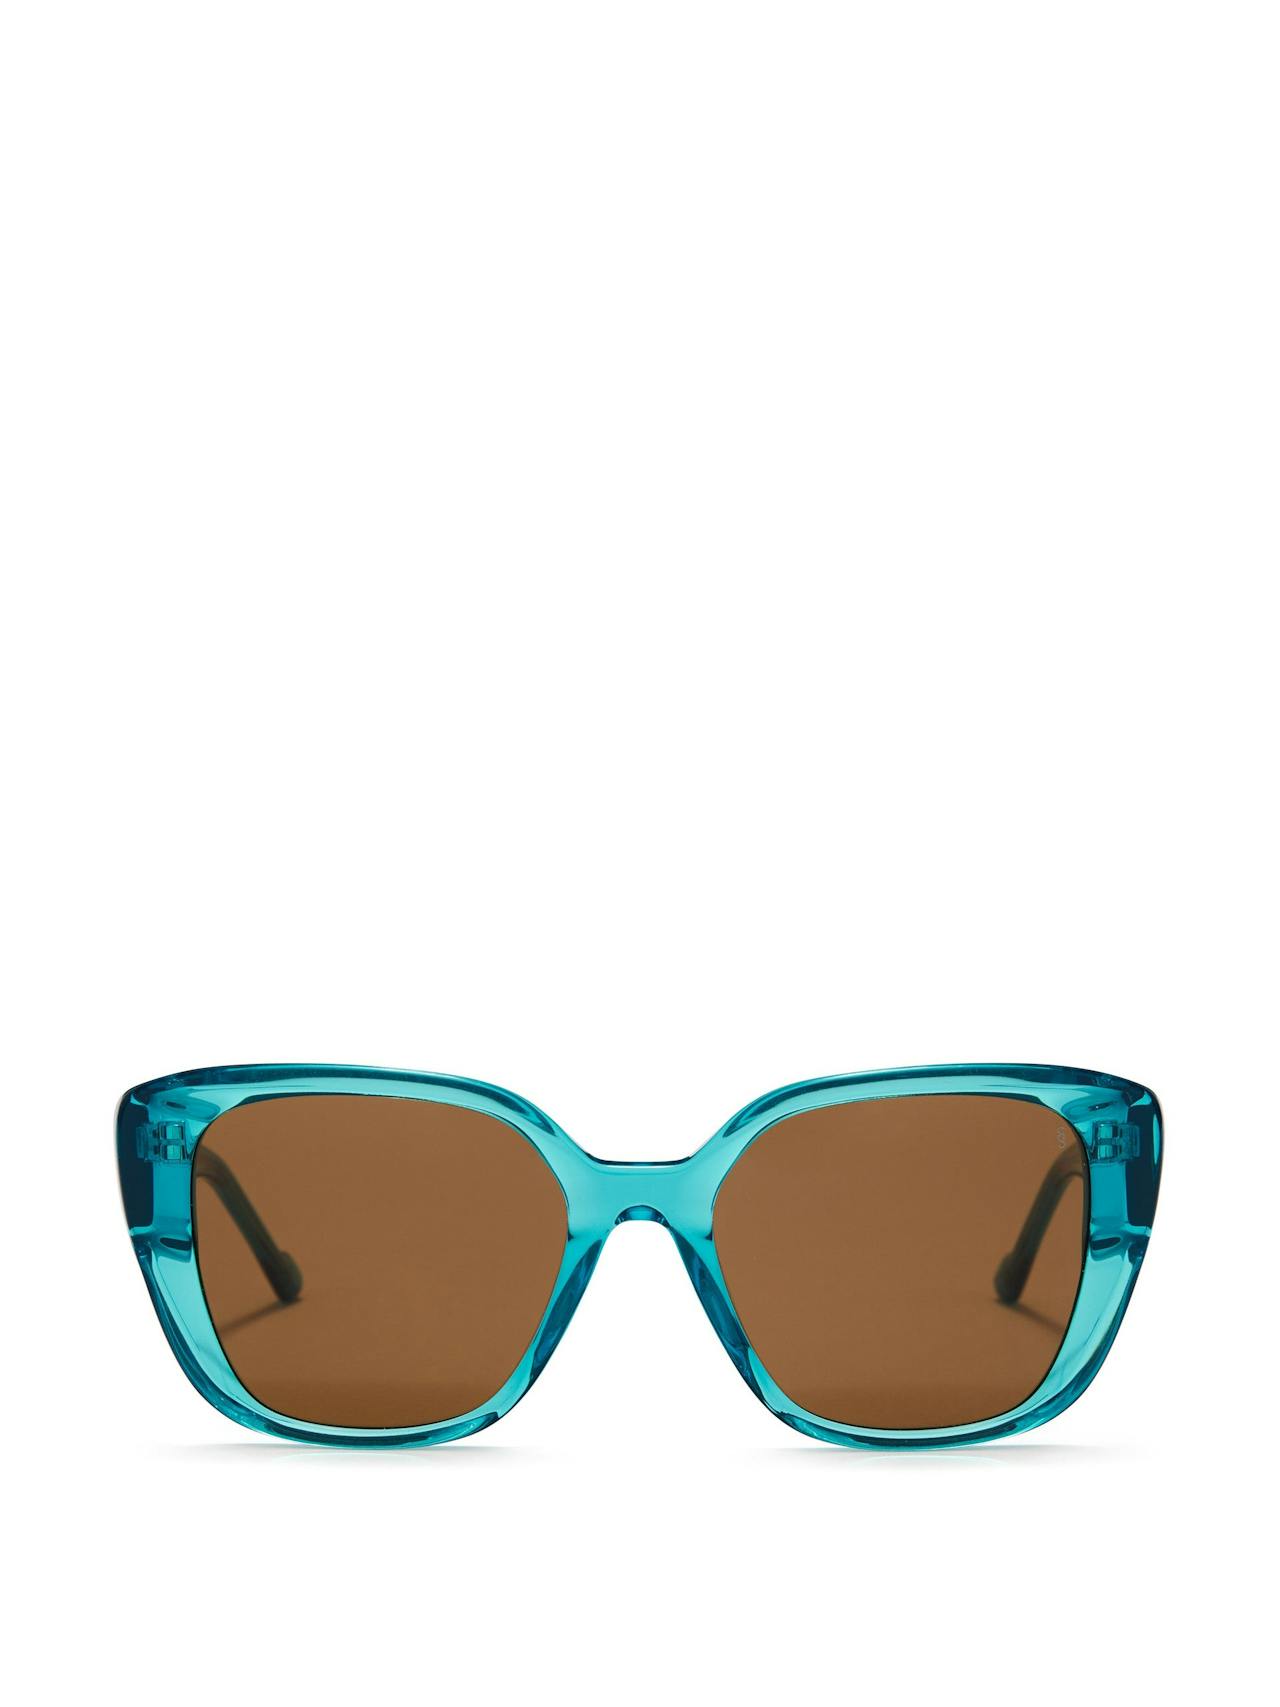 Azure crystal Harmonia sunglasses